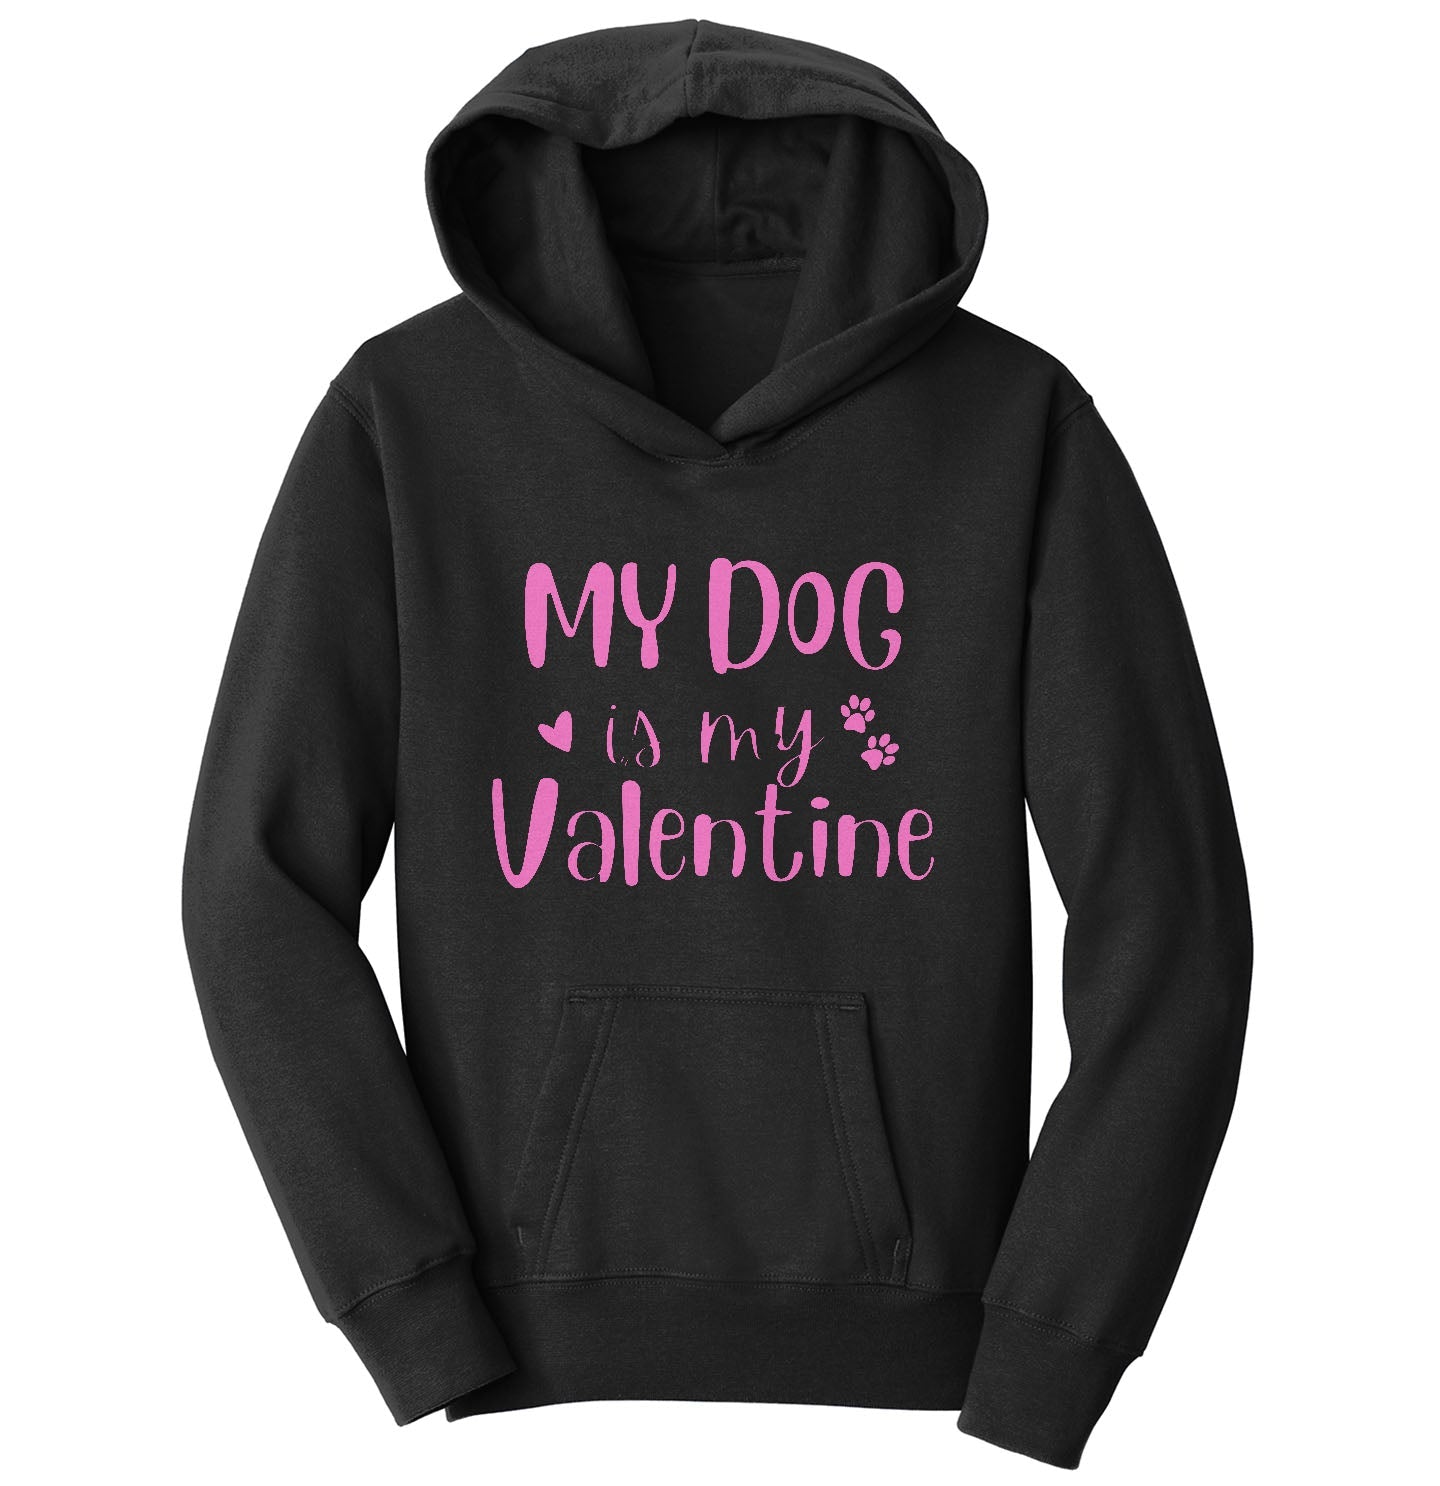 My Dog Valentine - Kids' Unisex Hoodie Sweatshirt